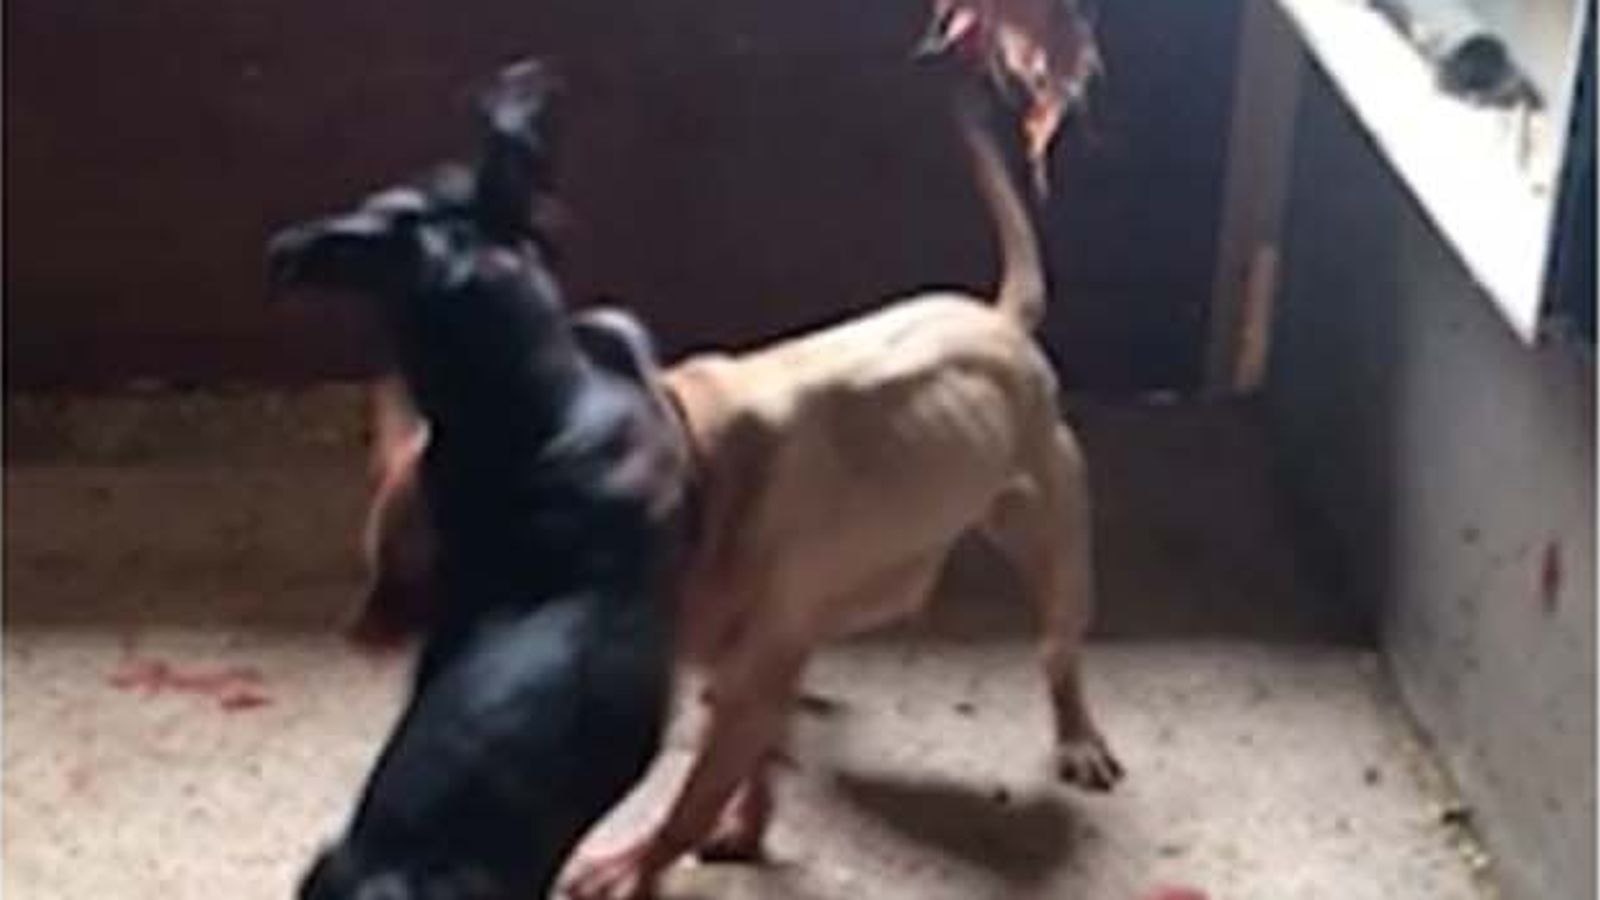 'Dr Death' and Essex gang who held brutal dog fights jailed